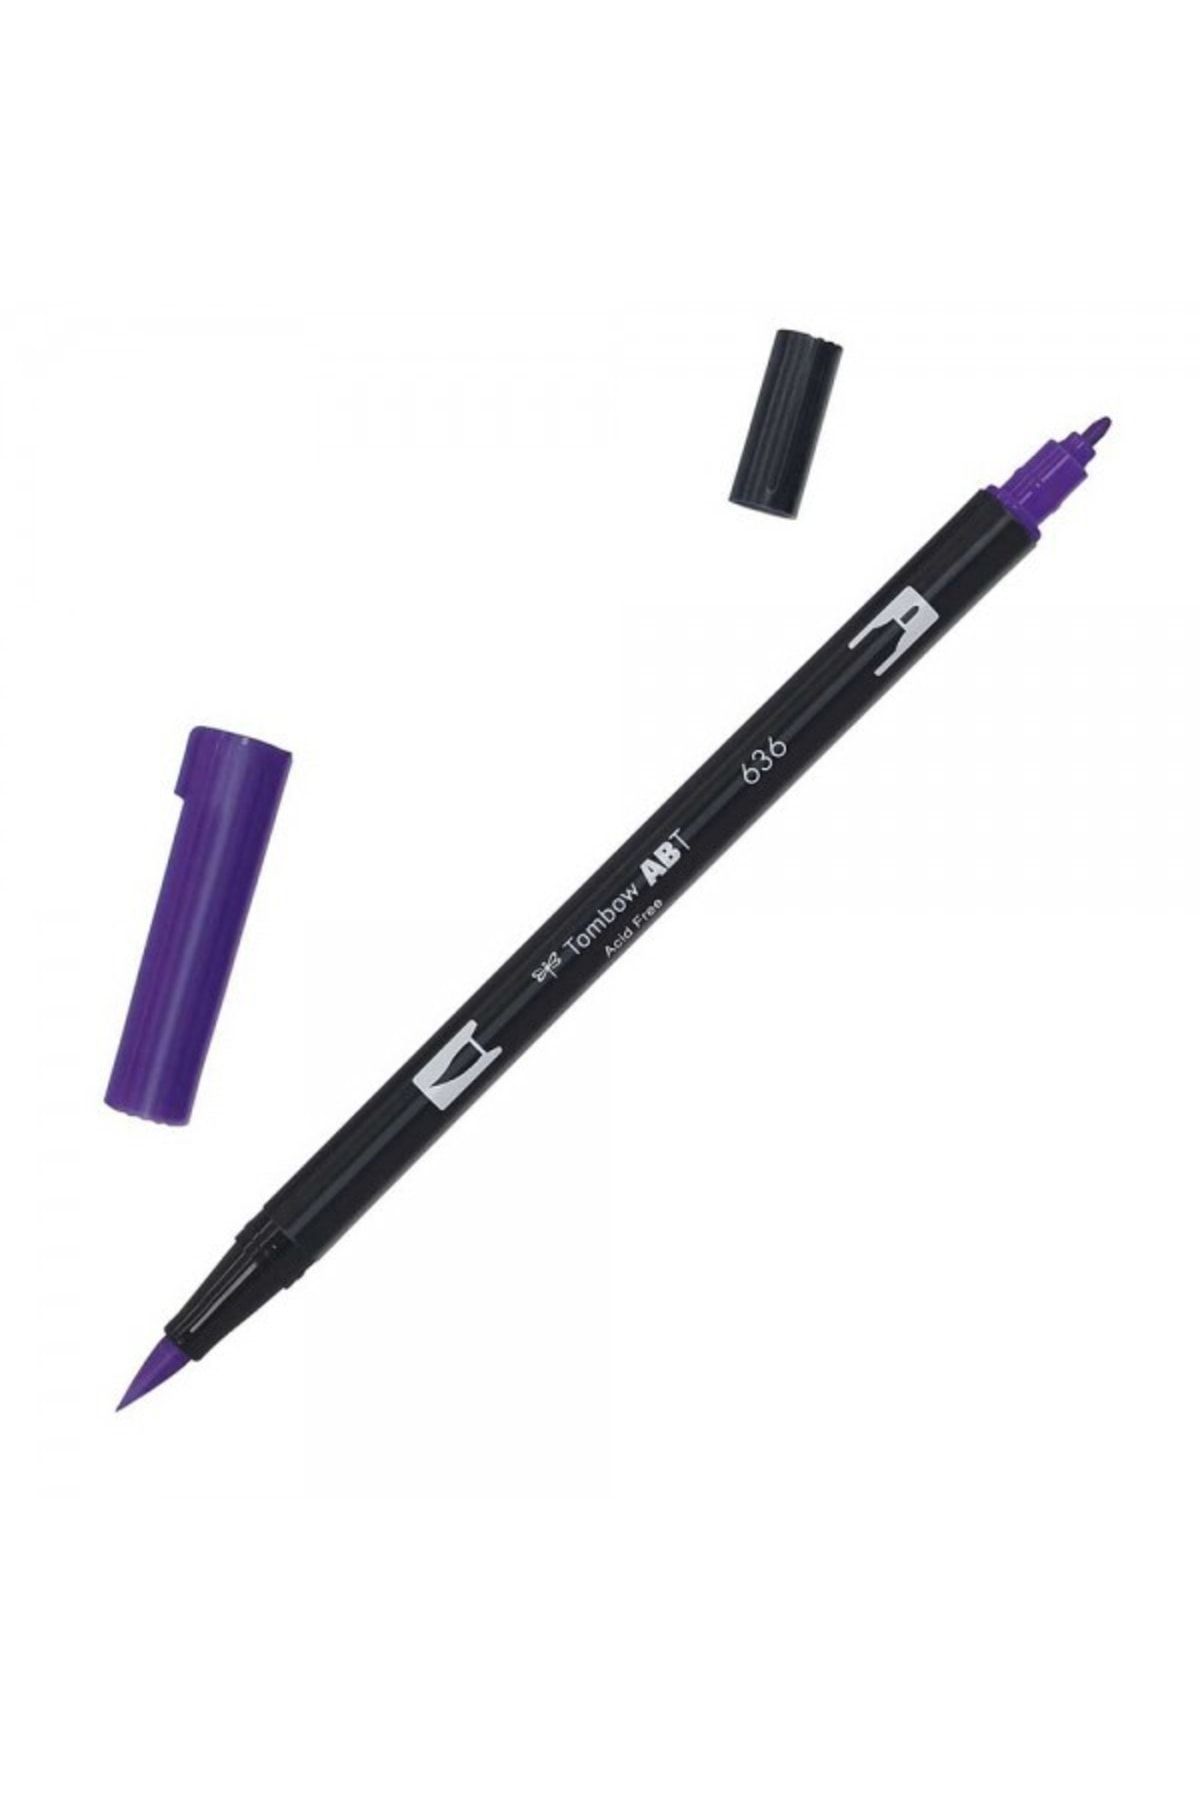 Tombow Ab-t Dual Brush Pen Grafik Kalemi - Imperial Blue